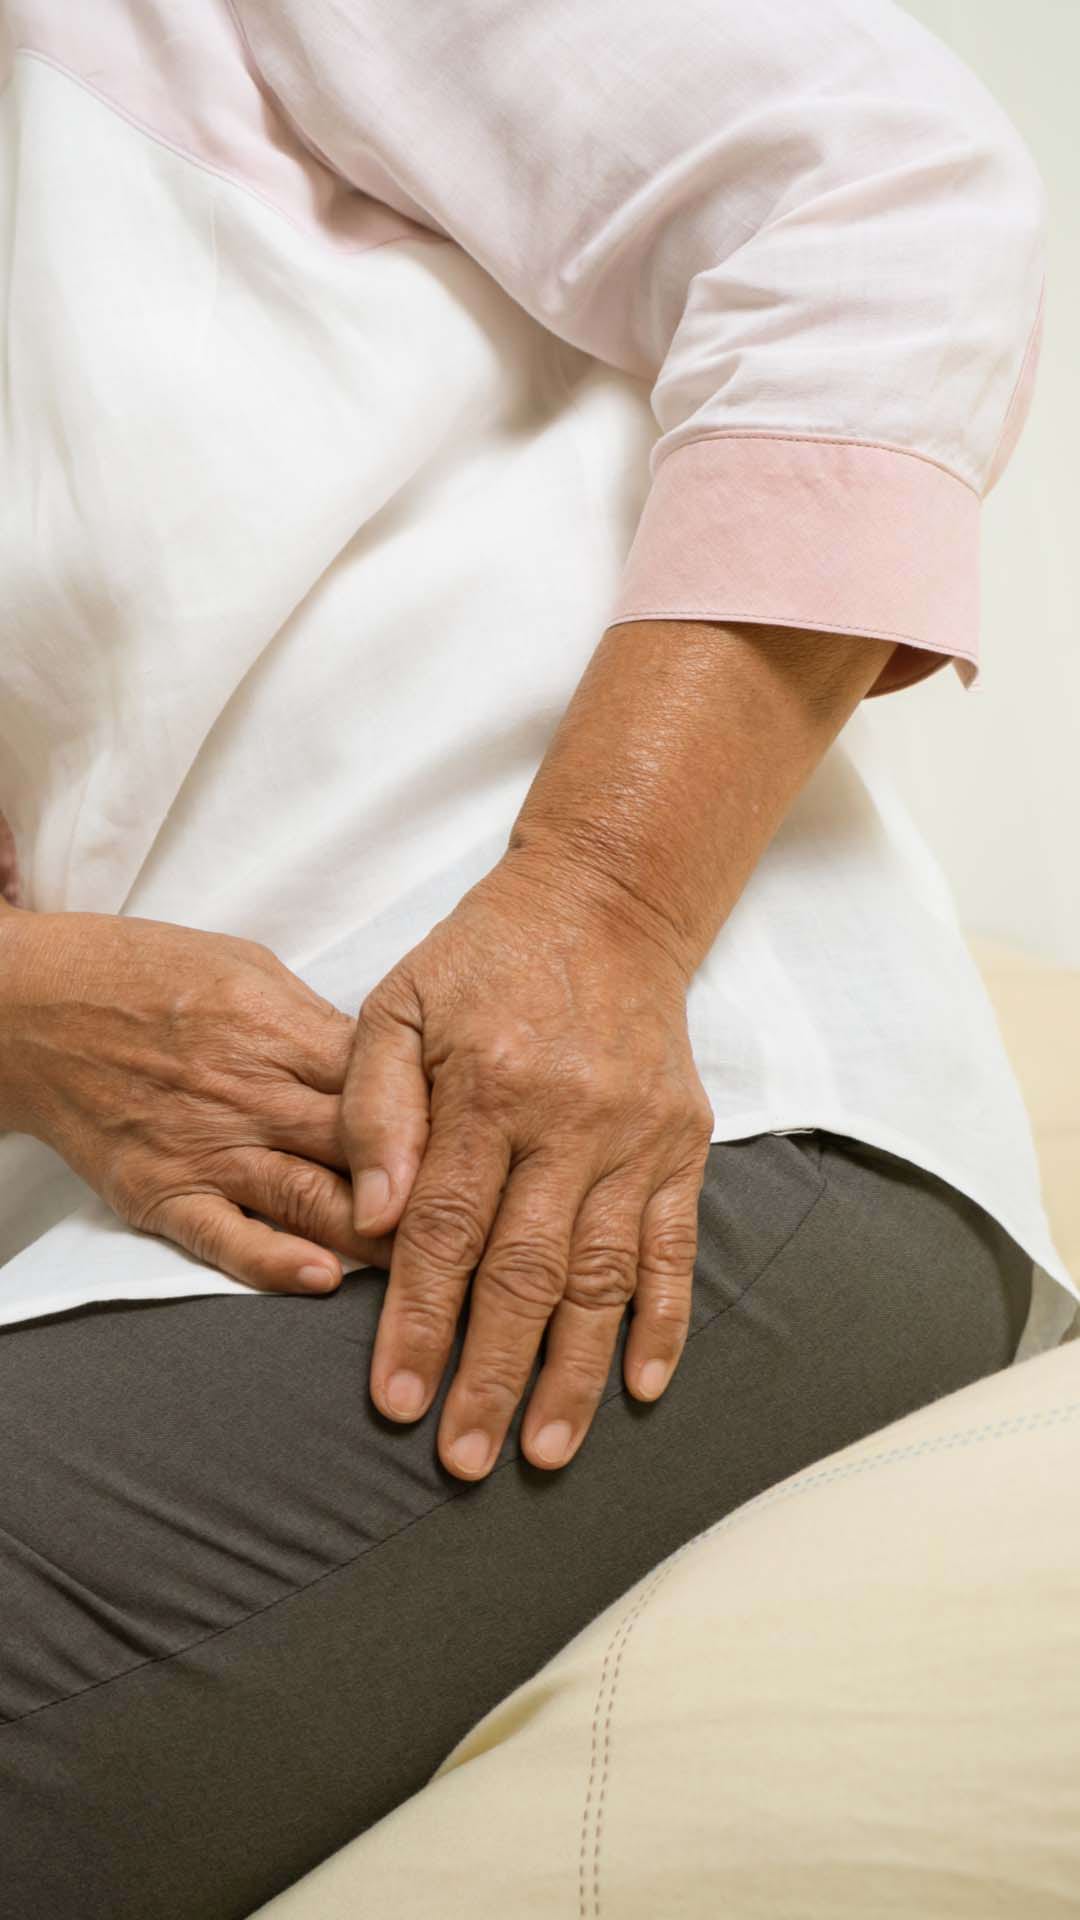 coxartroza si artroza genunchiului unguent antiinflamator nesteroidian pentru articulații